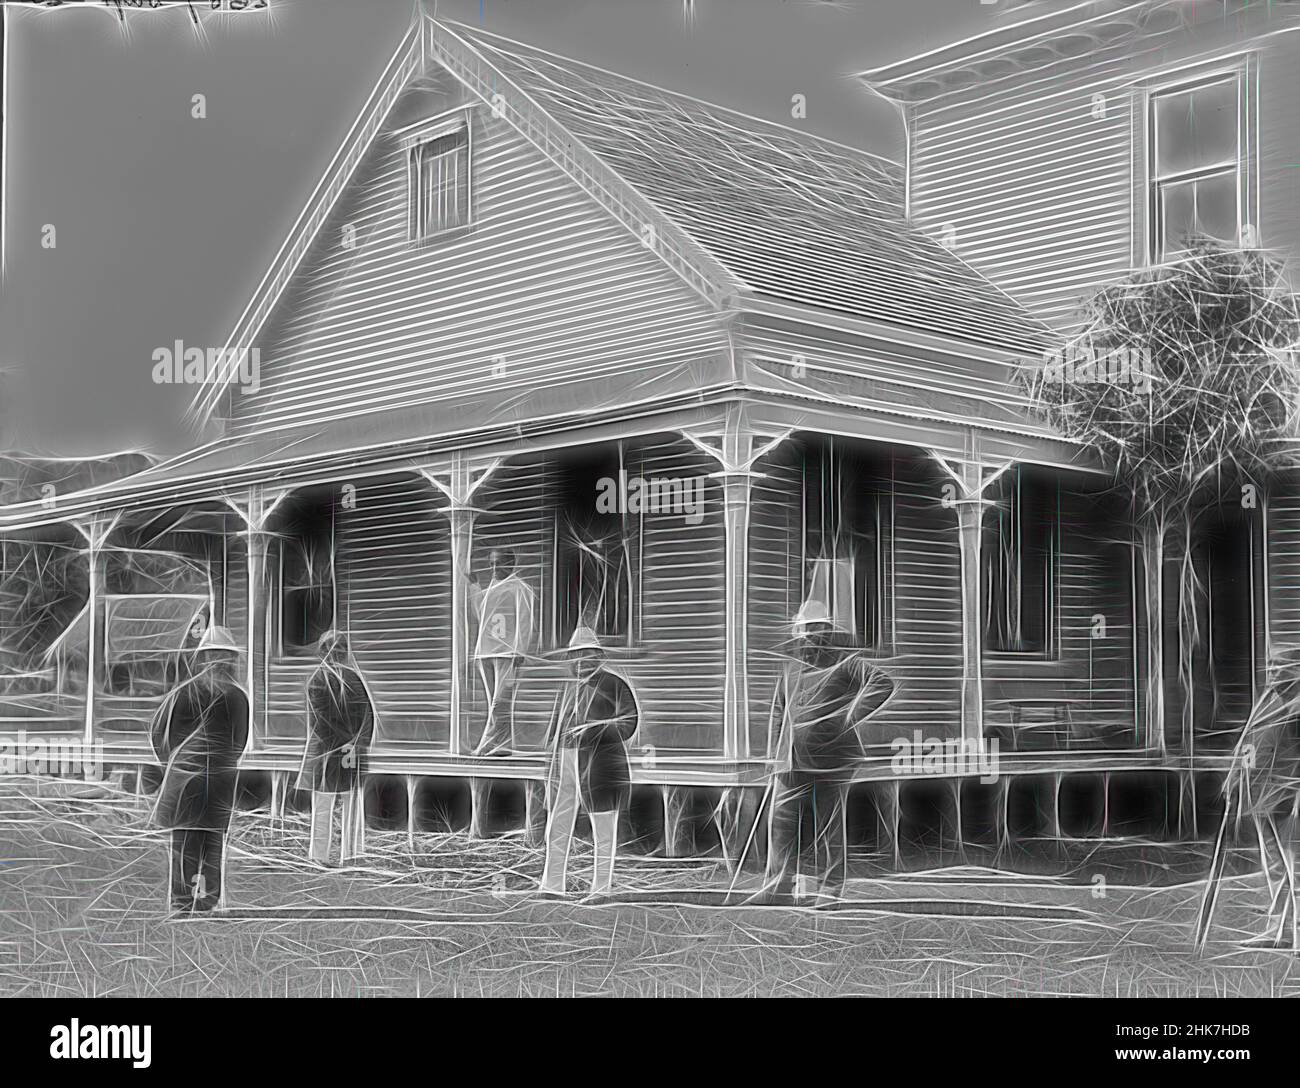 Inspiré par [Tongan notables], Burton Brothers studio, studio de photographie, 26 juillet 1884, Nouvelle-Zélande, Photographie en noir et blanc, six hommes, vêtu d'une tenue habillée, ont posé à l'extérieur d'un bâtiment dans la ville de Neiafu à Tongan. De gauche à droite : le révérend J B Watkin, surintendant du circuit de Vavau, Fotofili, gouverneur, réimaginé par Artotop. L'art classique réinventé avec une touche moderne. Conception de lumière chaleureuse et gaie, de luminosité et de rayonnement de lumière. La photographie s'inspire du surréalisme et du futurisme, embrassant l'énergie dynamique de la technologie moderne, du mouvement, de la vitesse et révolutionne la culture Banque D'Images